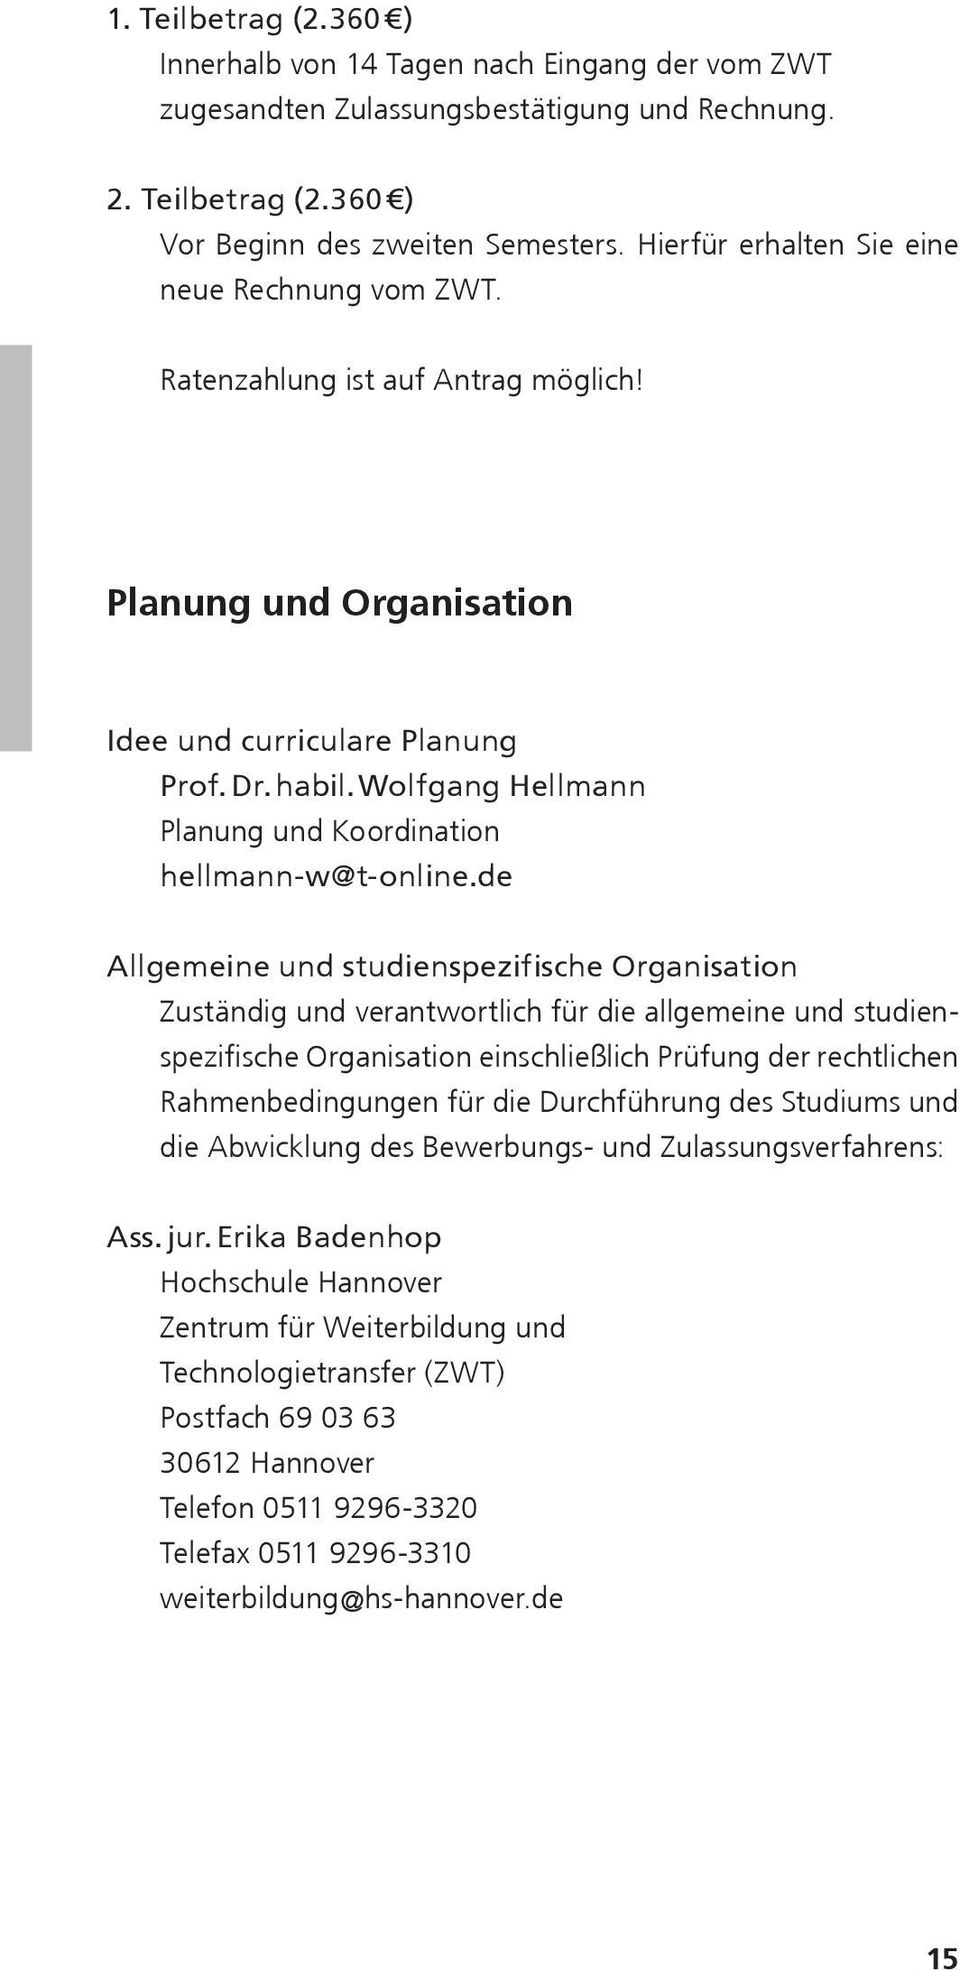 Wolfgang Hellmann Planung und Koordination hellmann-w@t-online.